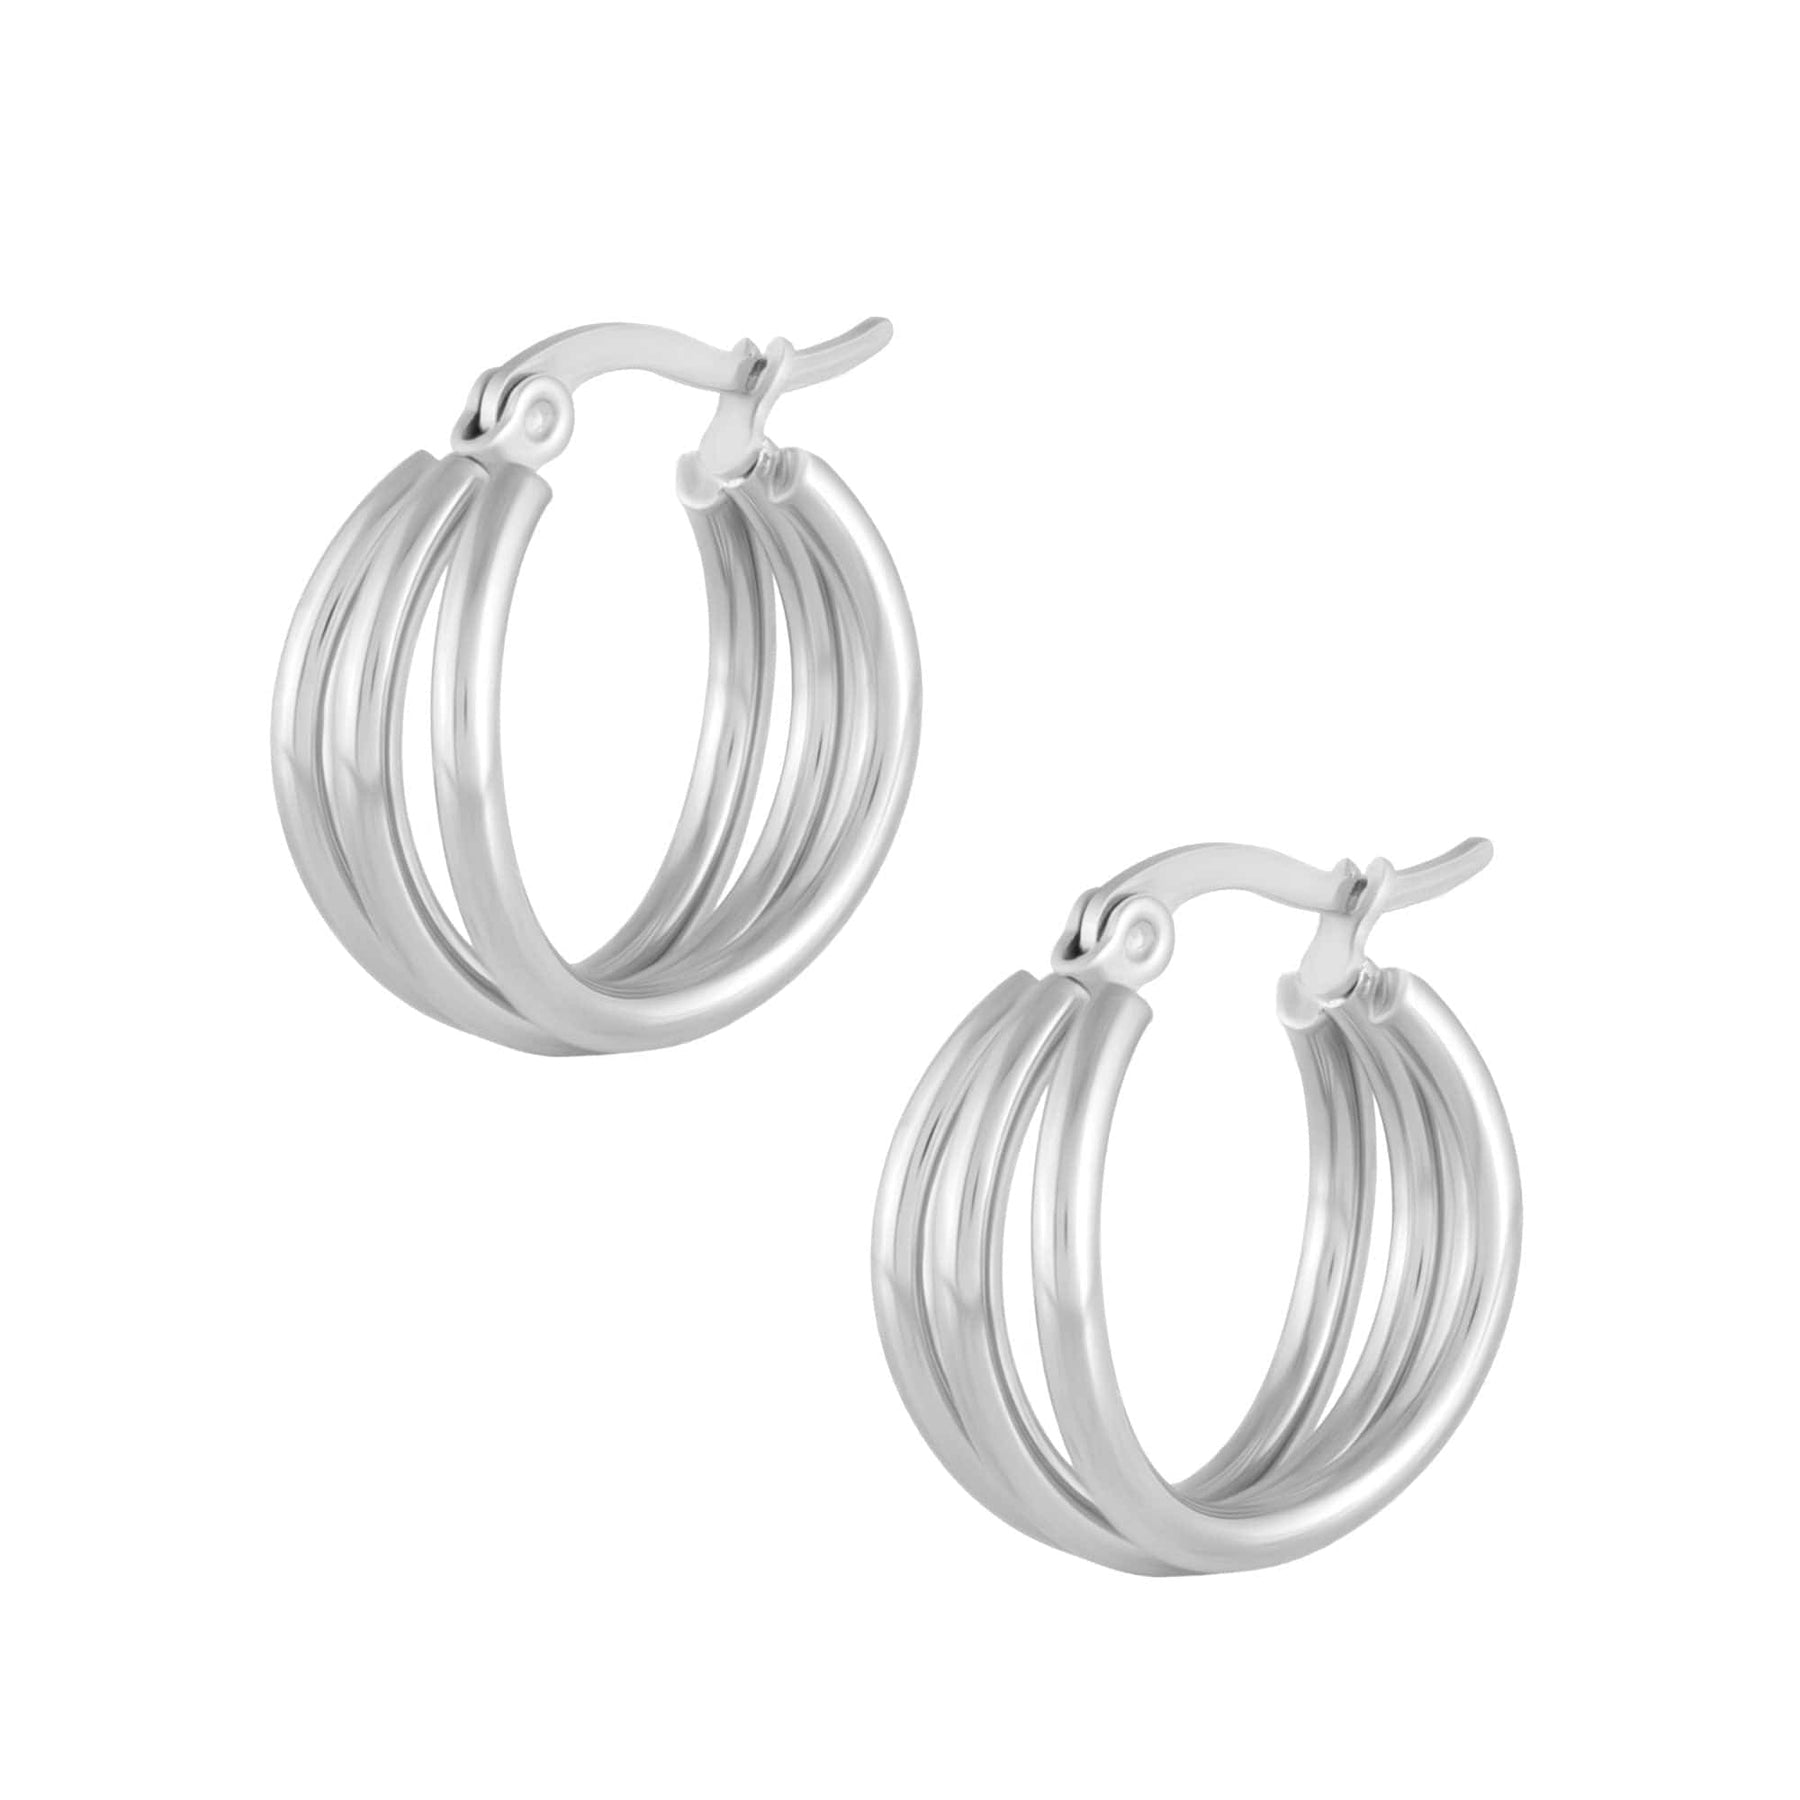 BohoMoon Stainless Steel Lea Triple Hoop Earrings Silver